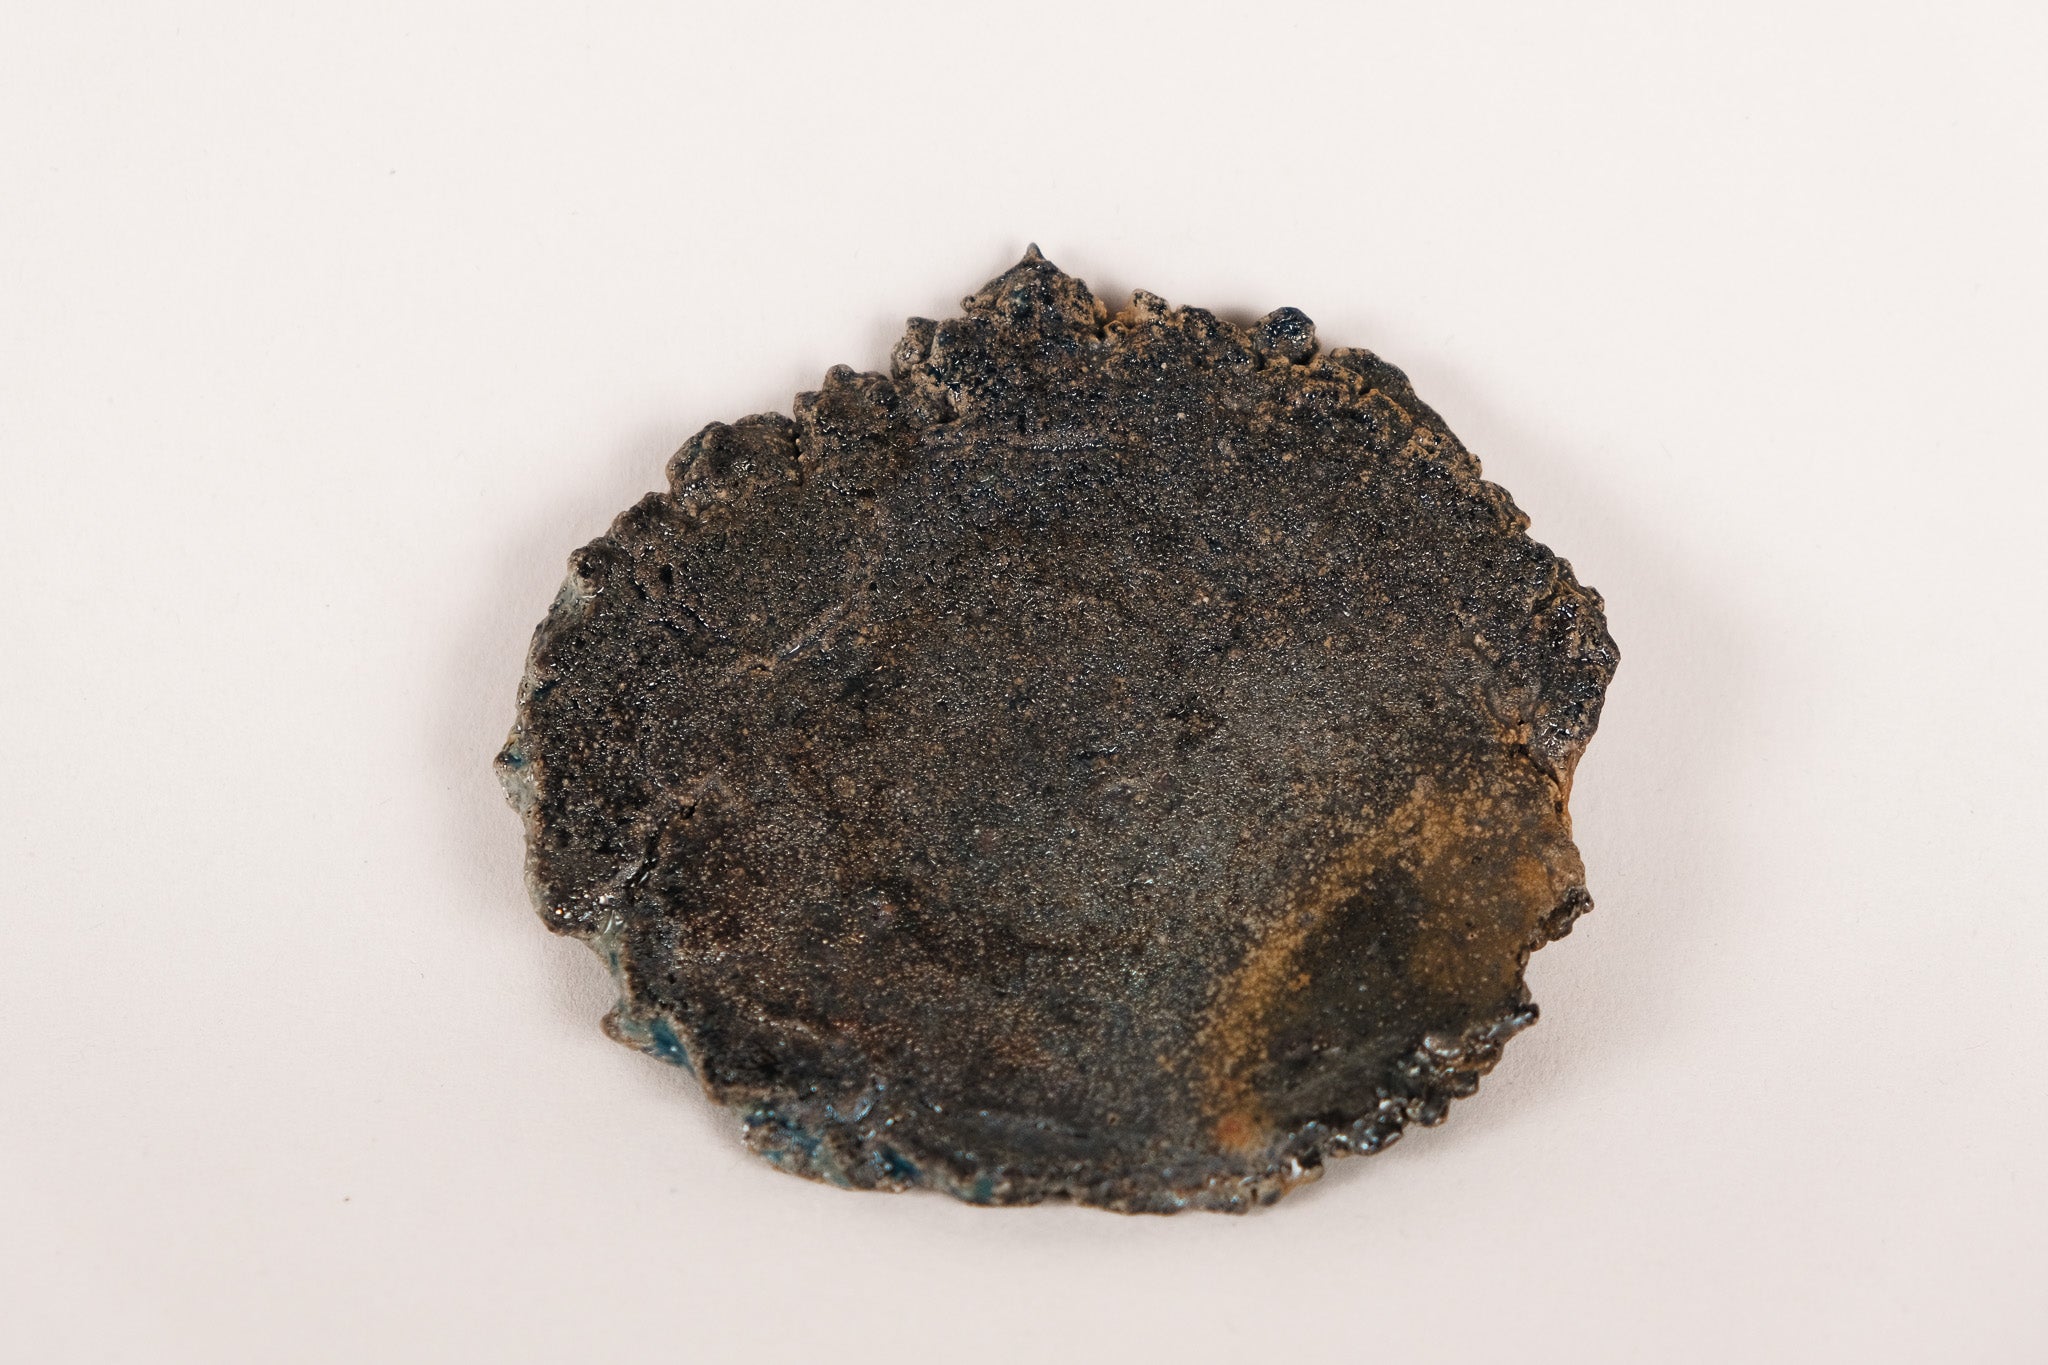 Teacup Holder-Unglazed Wood-fired · Can be teacup Holder or Dessert Plate